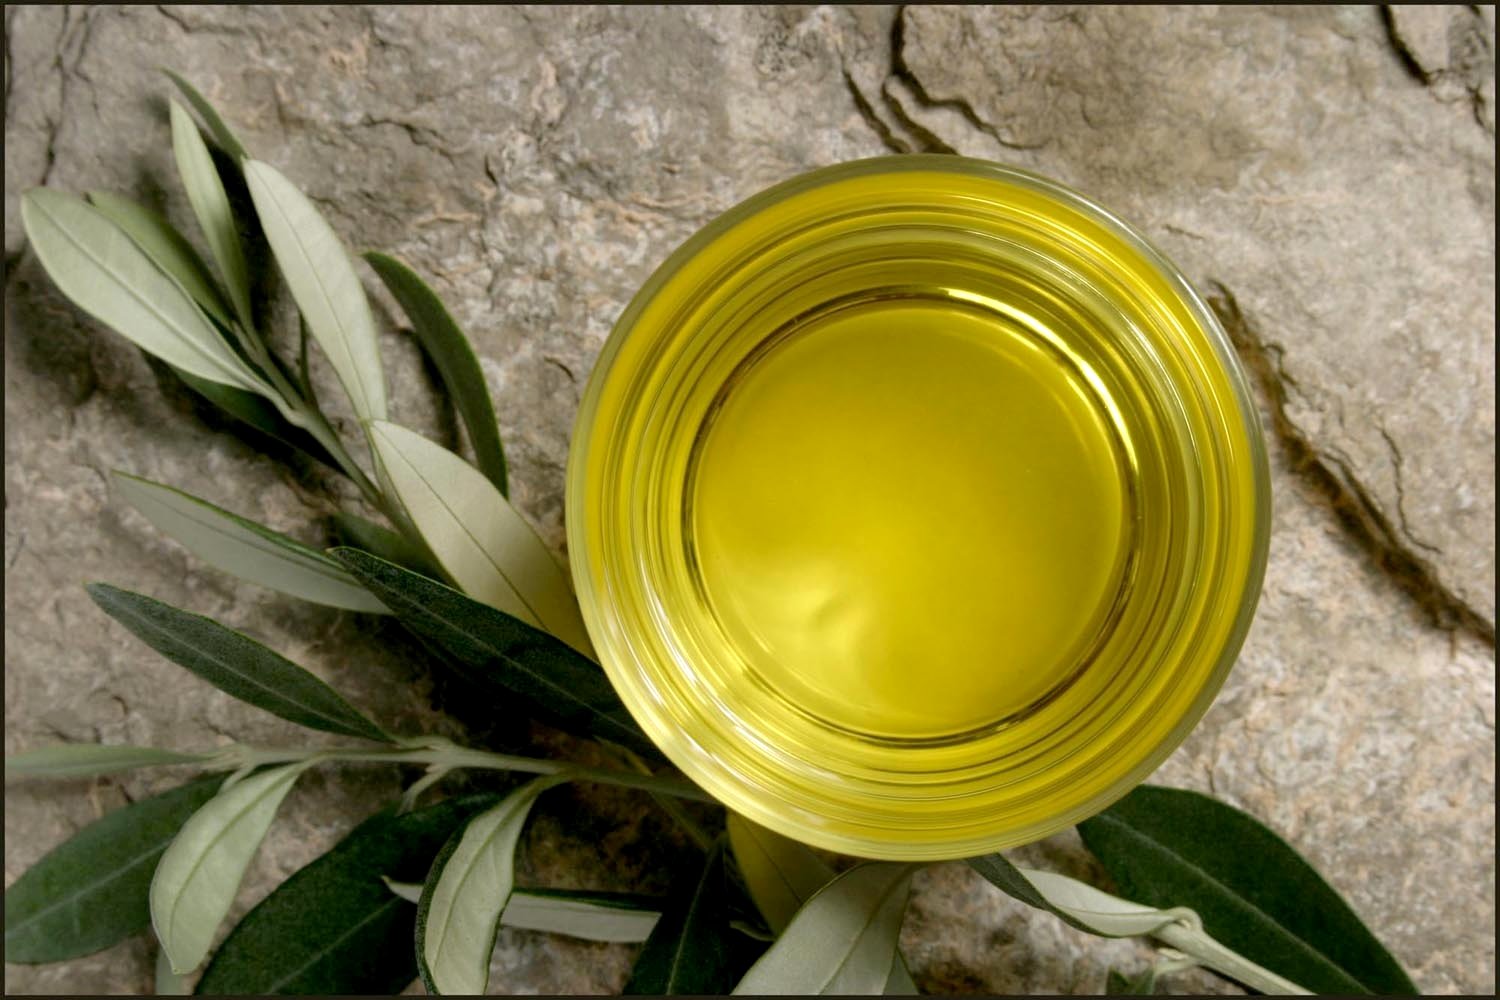  طريقة تخليل الزيتون الأخضر Olive-oil